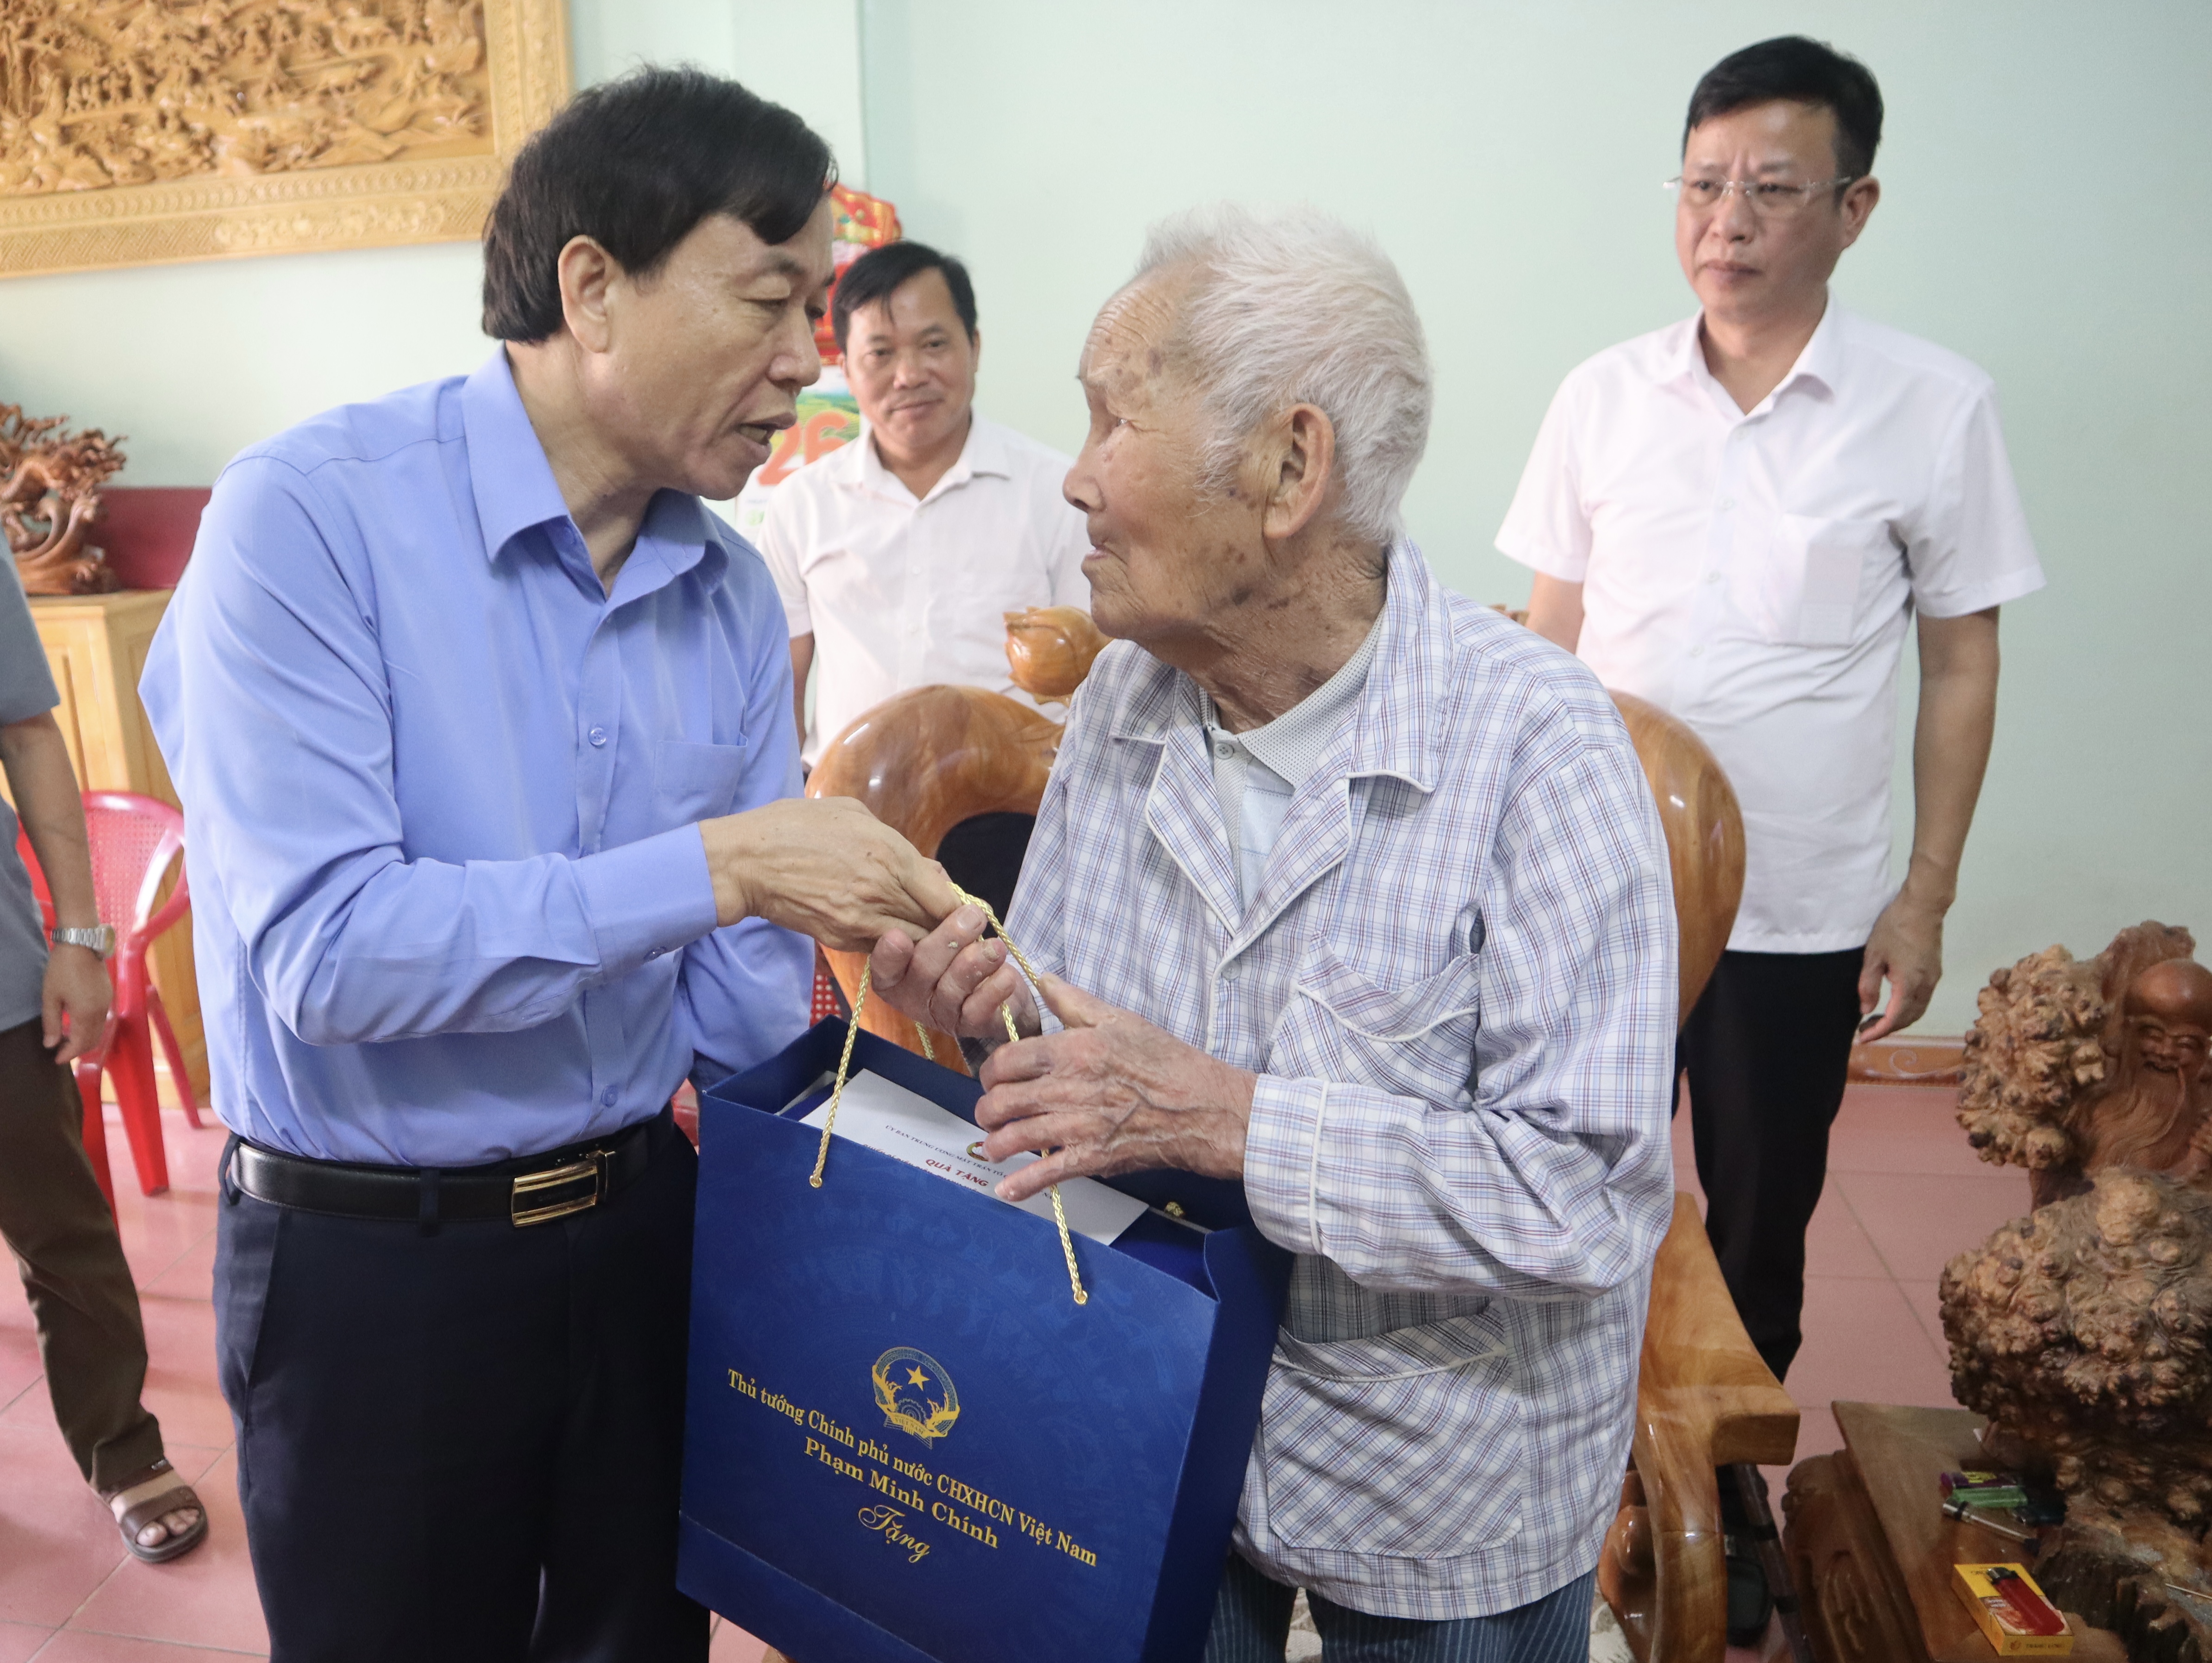 Đồng chí Chủ tịch UBND tỉnh Lê Văn Lương thăm, tặng quà chiến sĩ Nguyễn Văn Riêm - Đội 9, xã Phúc Than